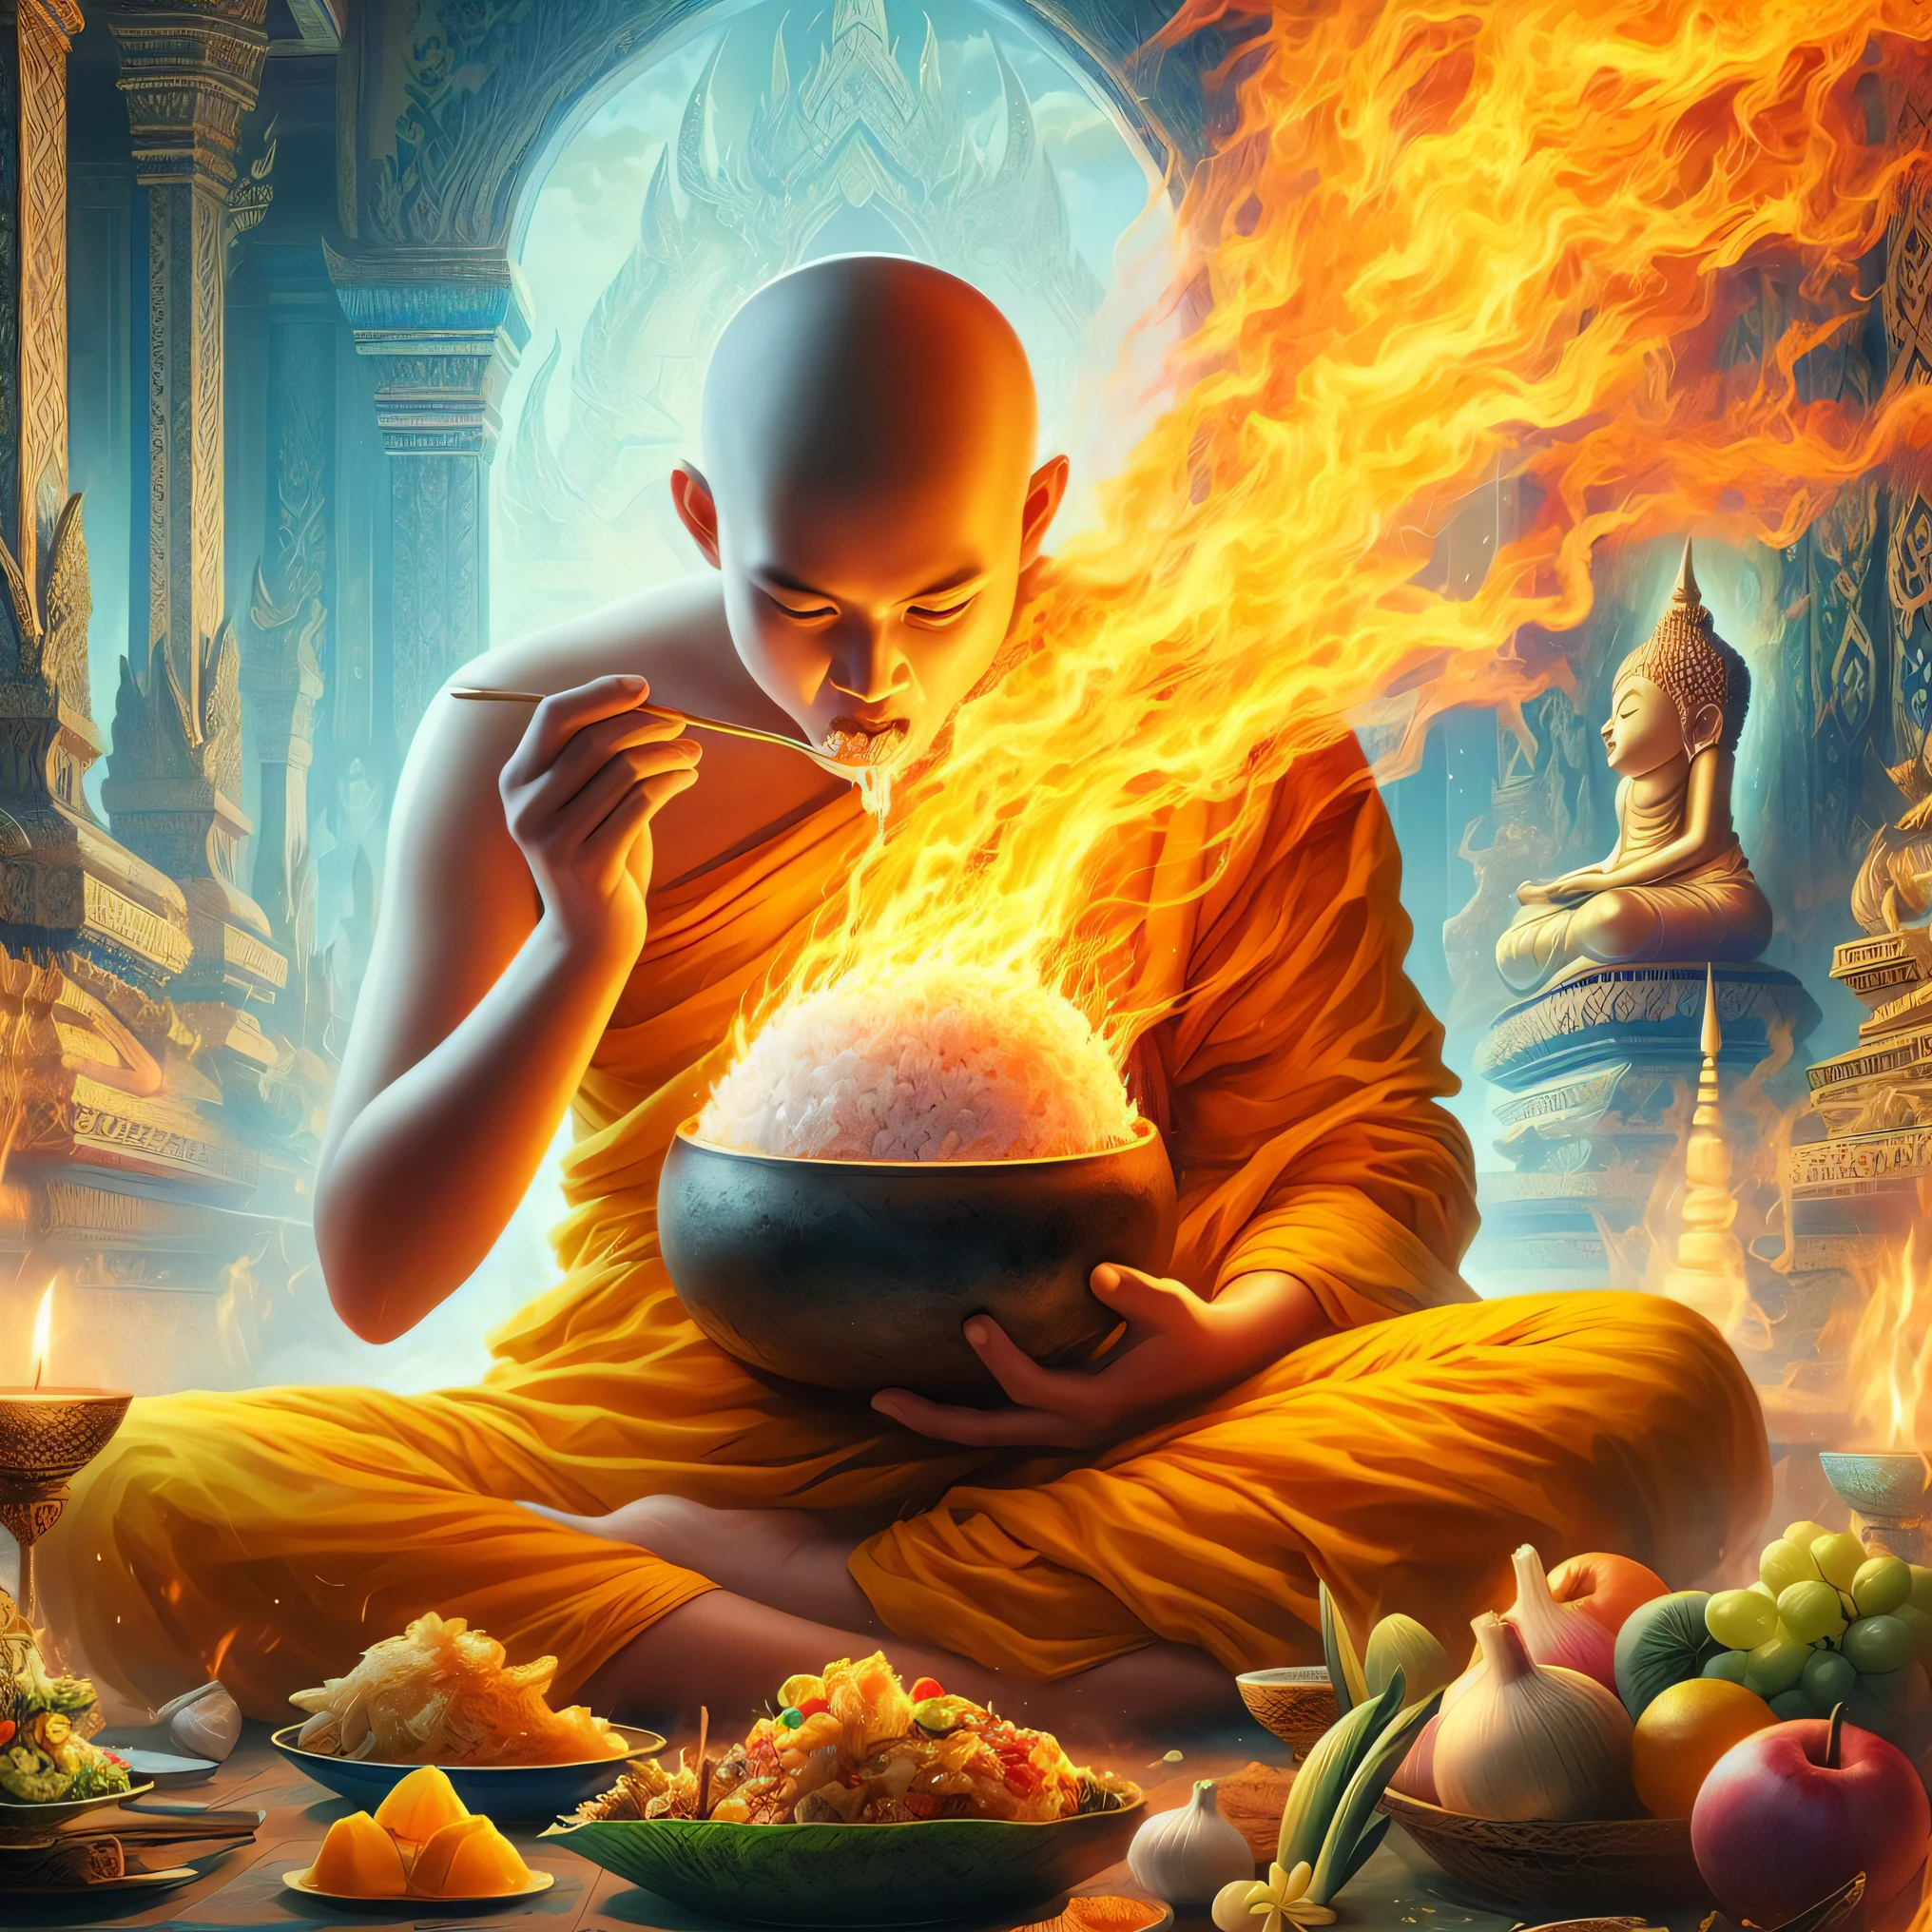 arafed monge sitting in front of a bowl of food with fogo coming out of it, monges!!!!!!!!! fogo, monge meditate, feitiço da chama sagrada, holy fogo spell art, budista monge, budista monge meditating, fisting monge, budista, concept art of a monge, monge, 2 1 st century monge, samsara, budismo, conjuração de chama, Iluminação Espiritual